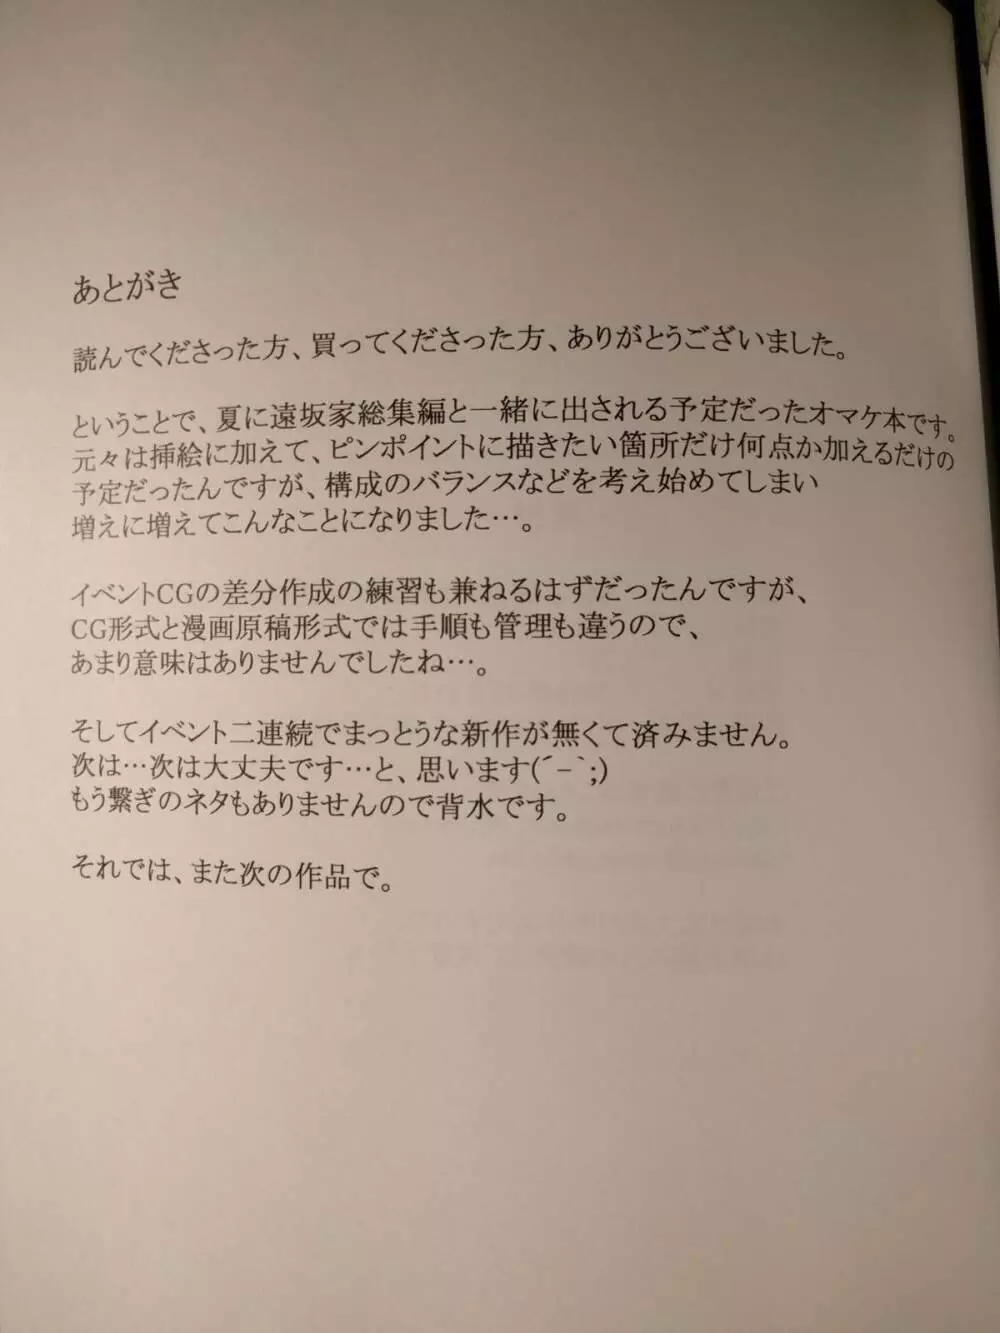 橘さん家ノ男性事情 小説版挿絵+オマケの本 page 27 onward 25ページ